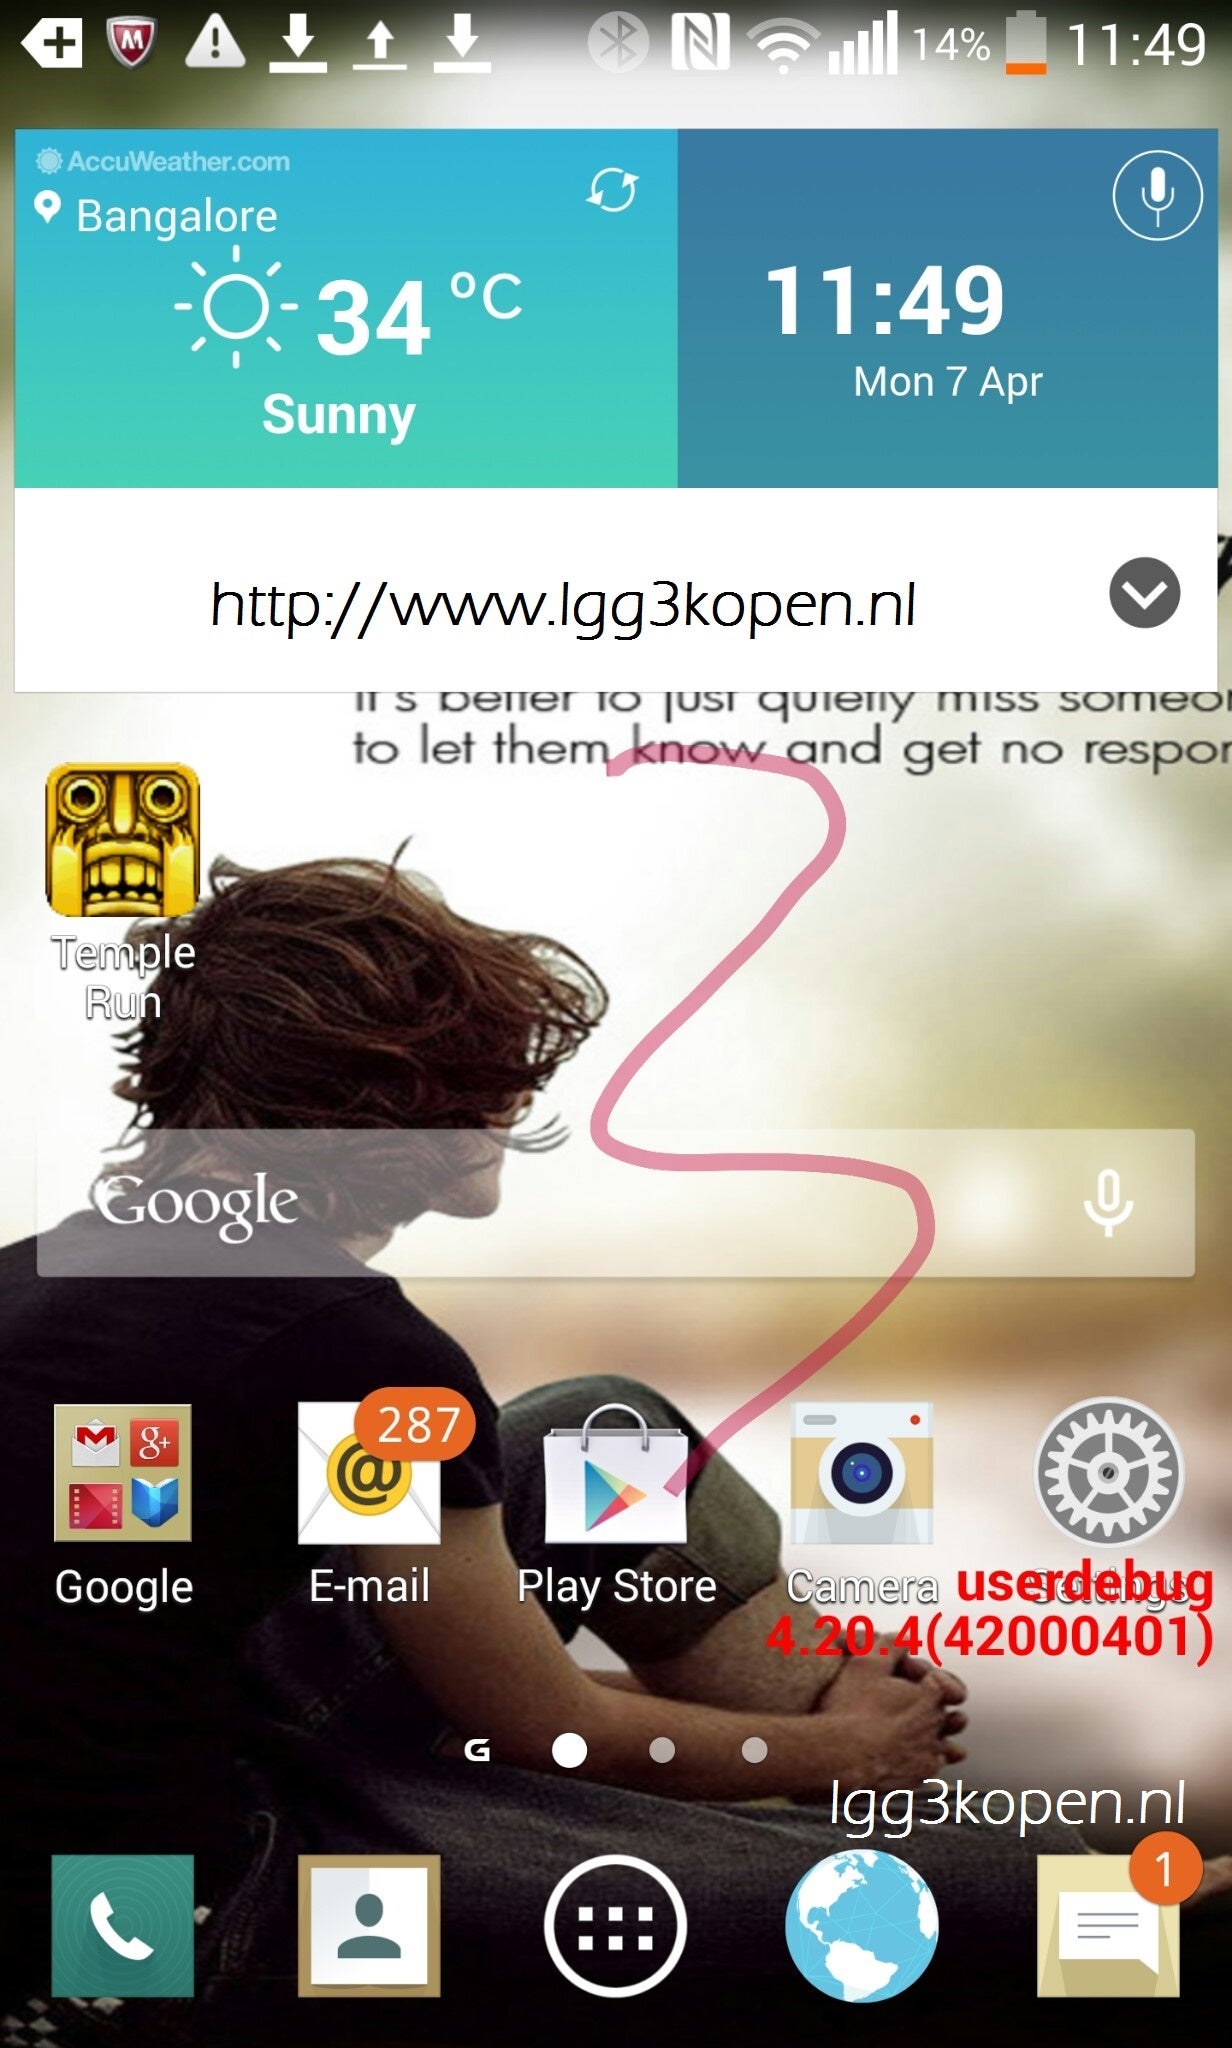 Alleged LG G3 screenshot hints at more “flat” design to Optimus UI